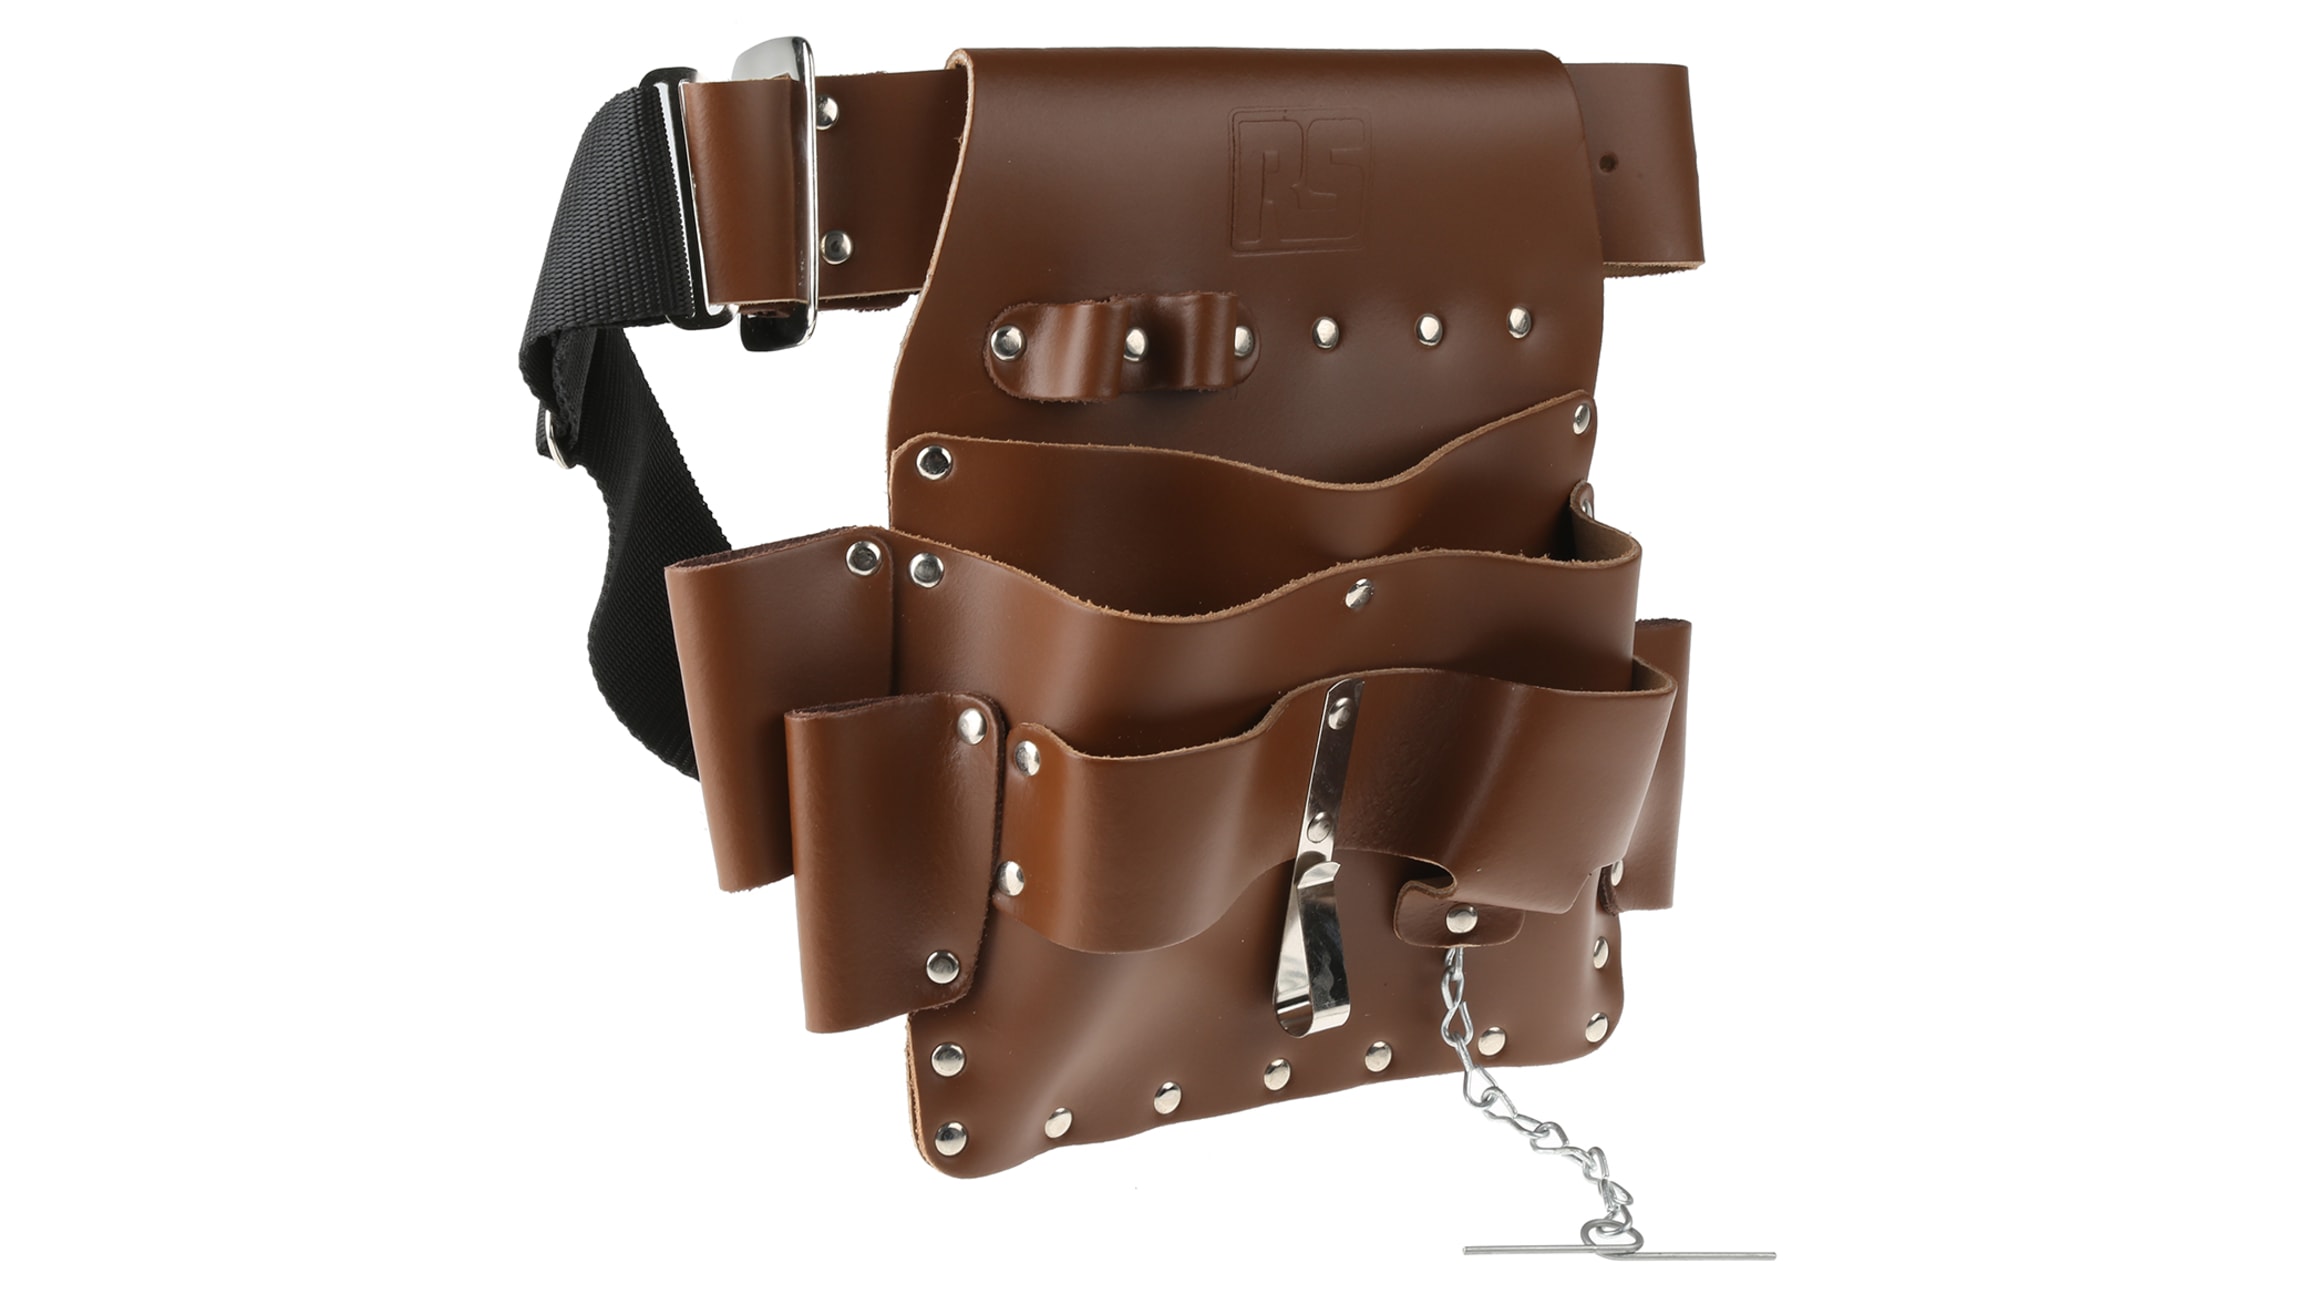 Cinturón porta herramientas en cuero de dos bolsillos. Ref